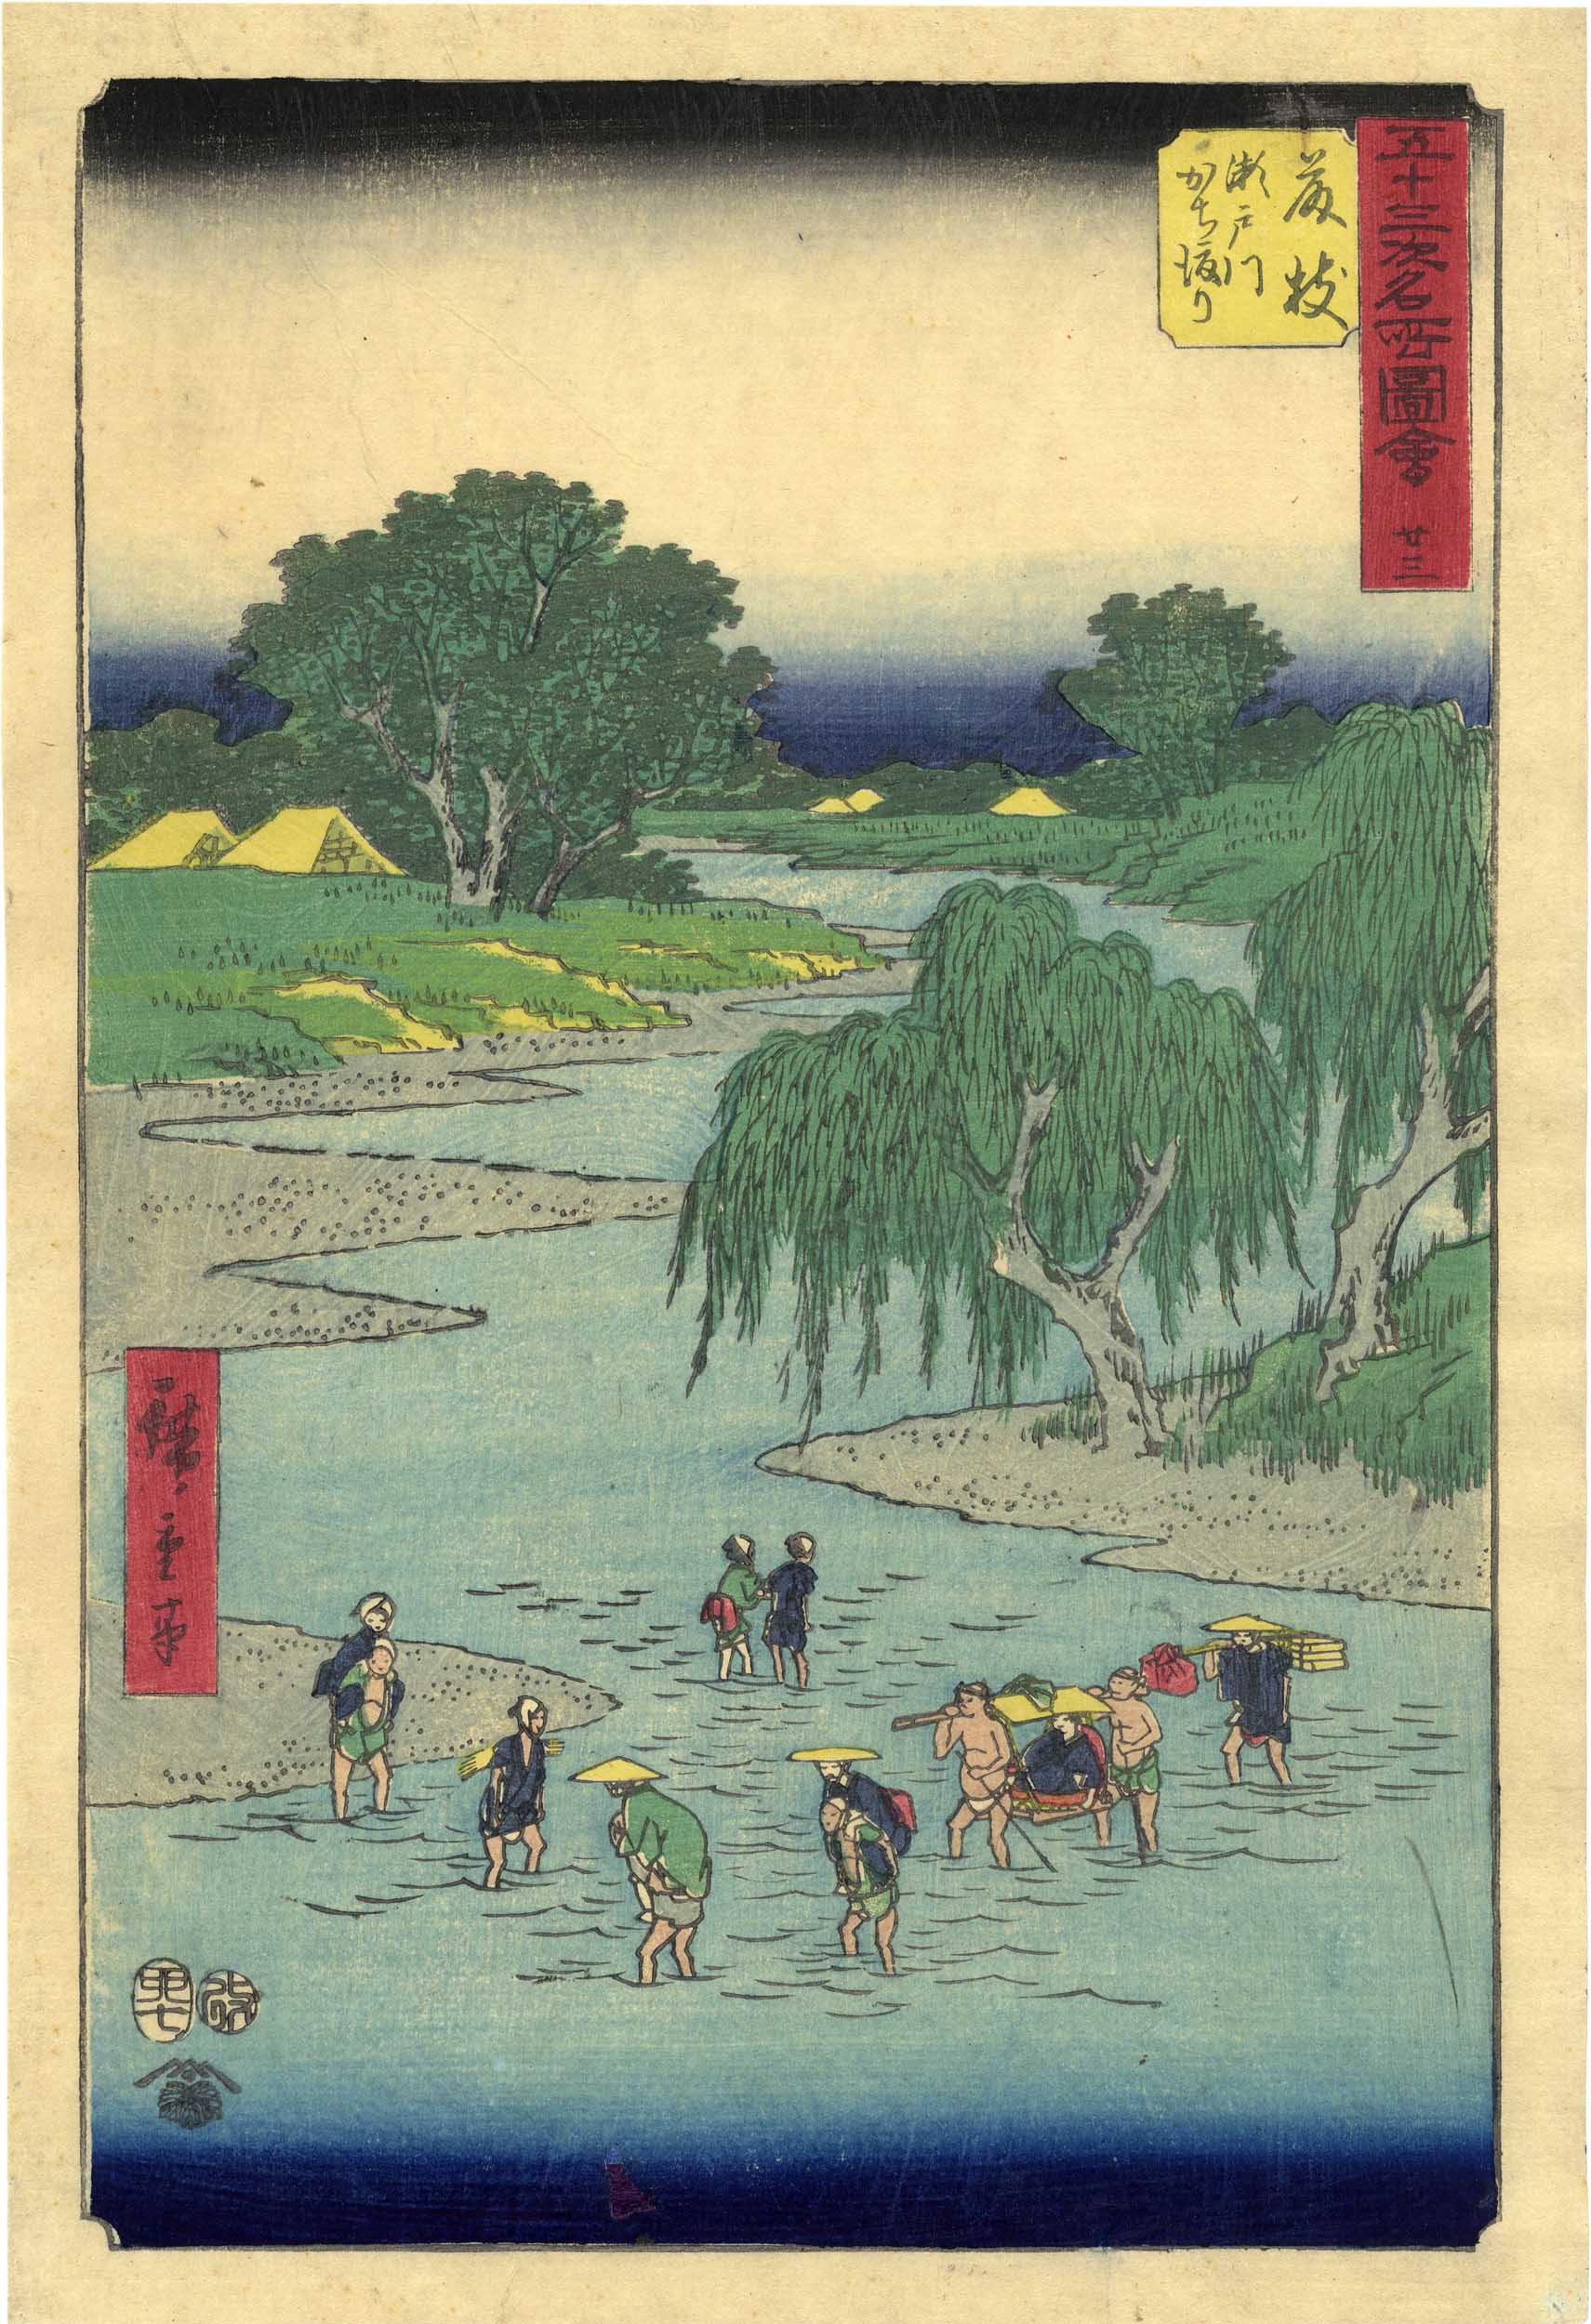 Hiroshige, Utagawa  1797-1858  Tokaido-Landschaft (Oban, dat. 1855)  Aus der Serie "Gojusan tsugi